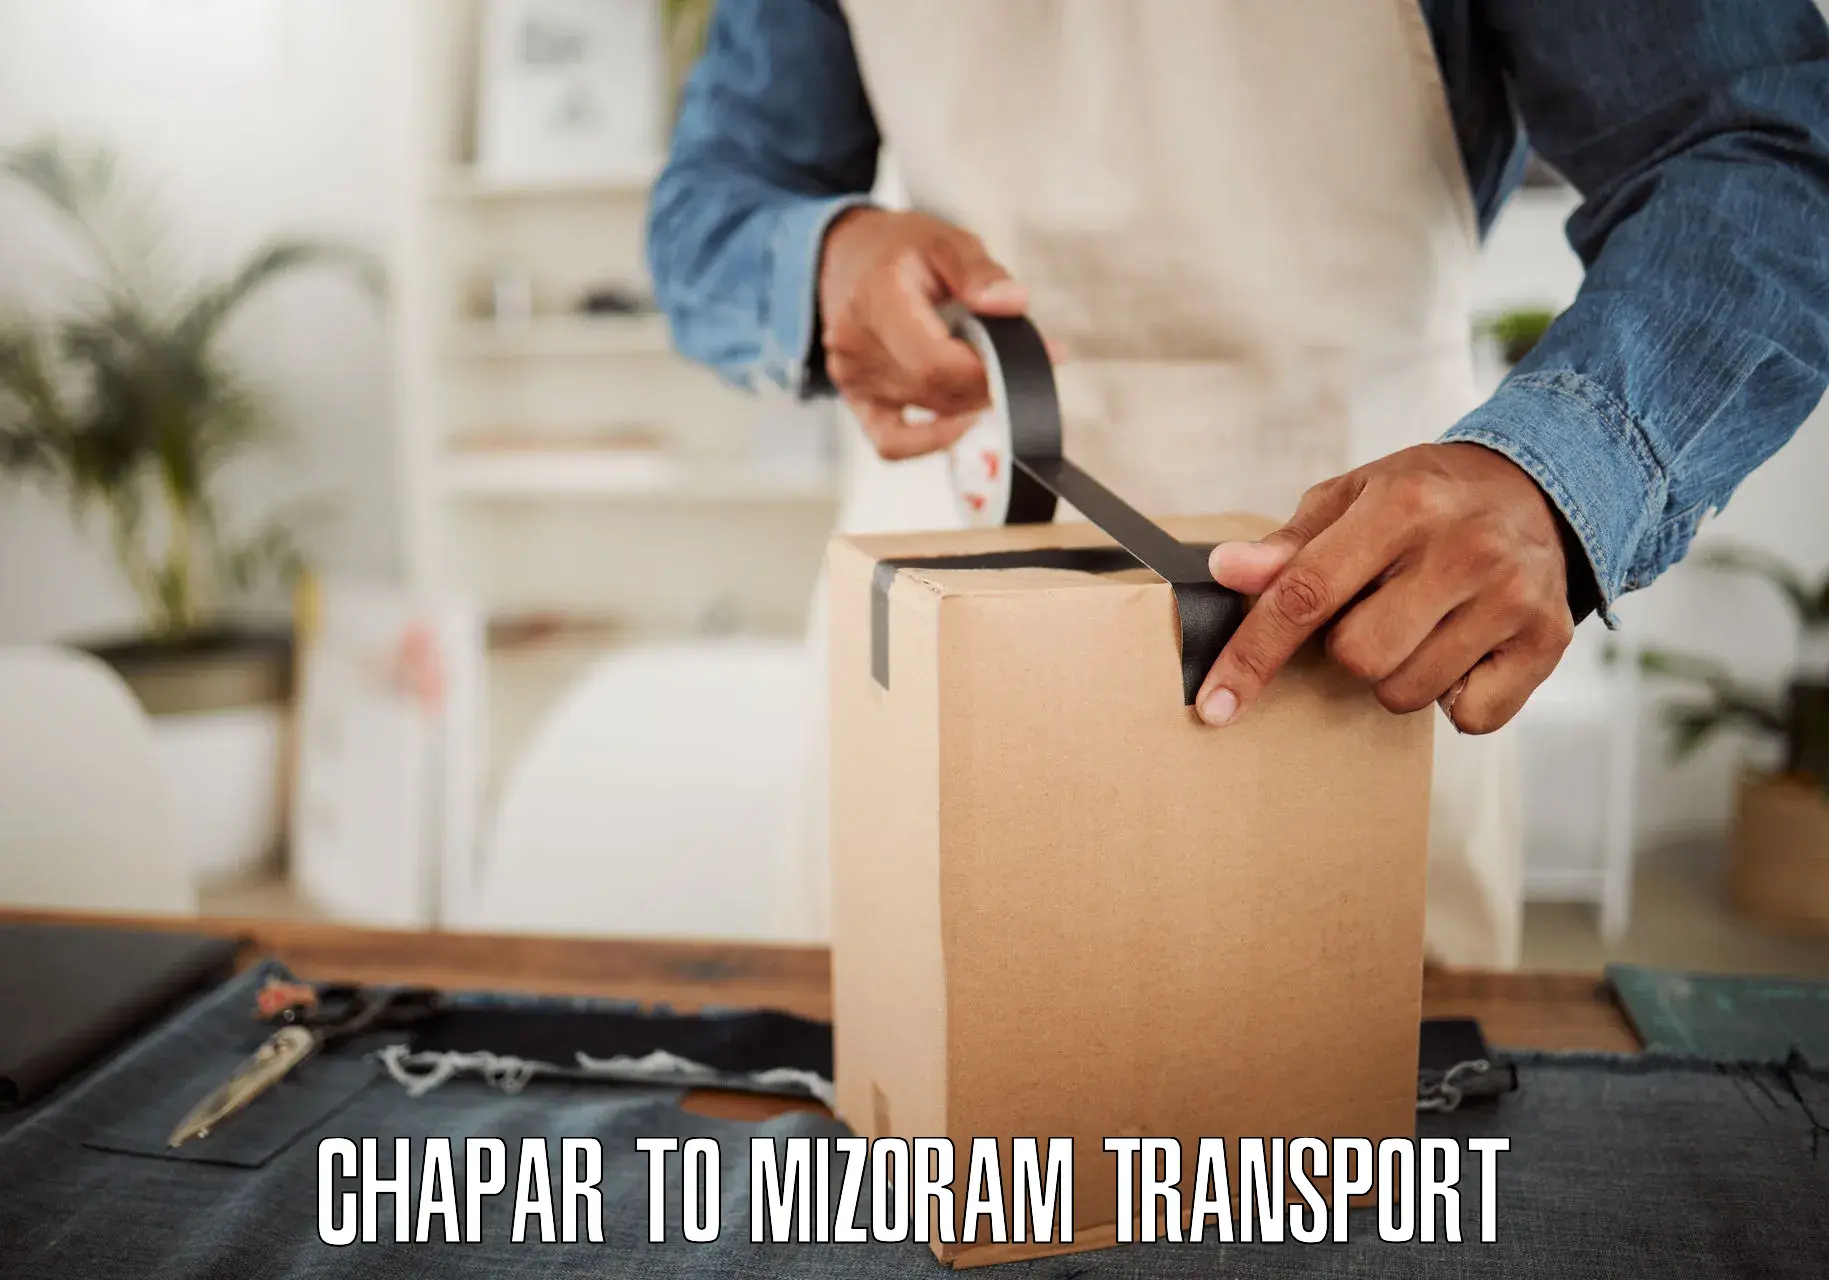 Bike transport service Chapar to Serchhip